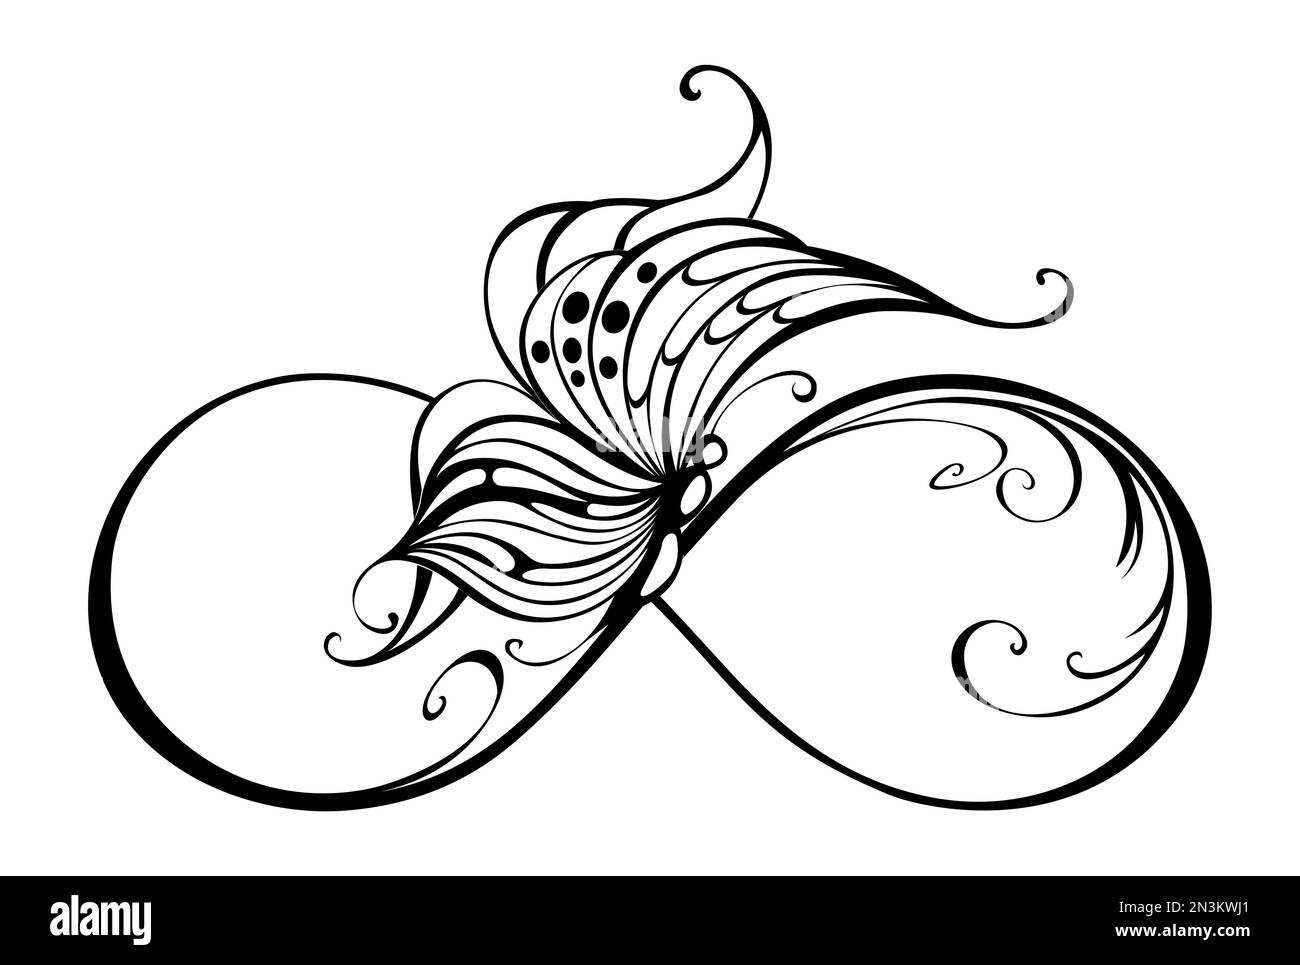 Schwarzes Unendlichkeitssymbol mit einer sitzenden, künstlerisch gezeichneten Motte auf weißem Hintergrund. Tattoo-Stil. Schmetterling konturieren. Stock Vektor